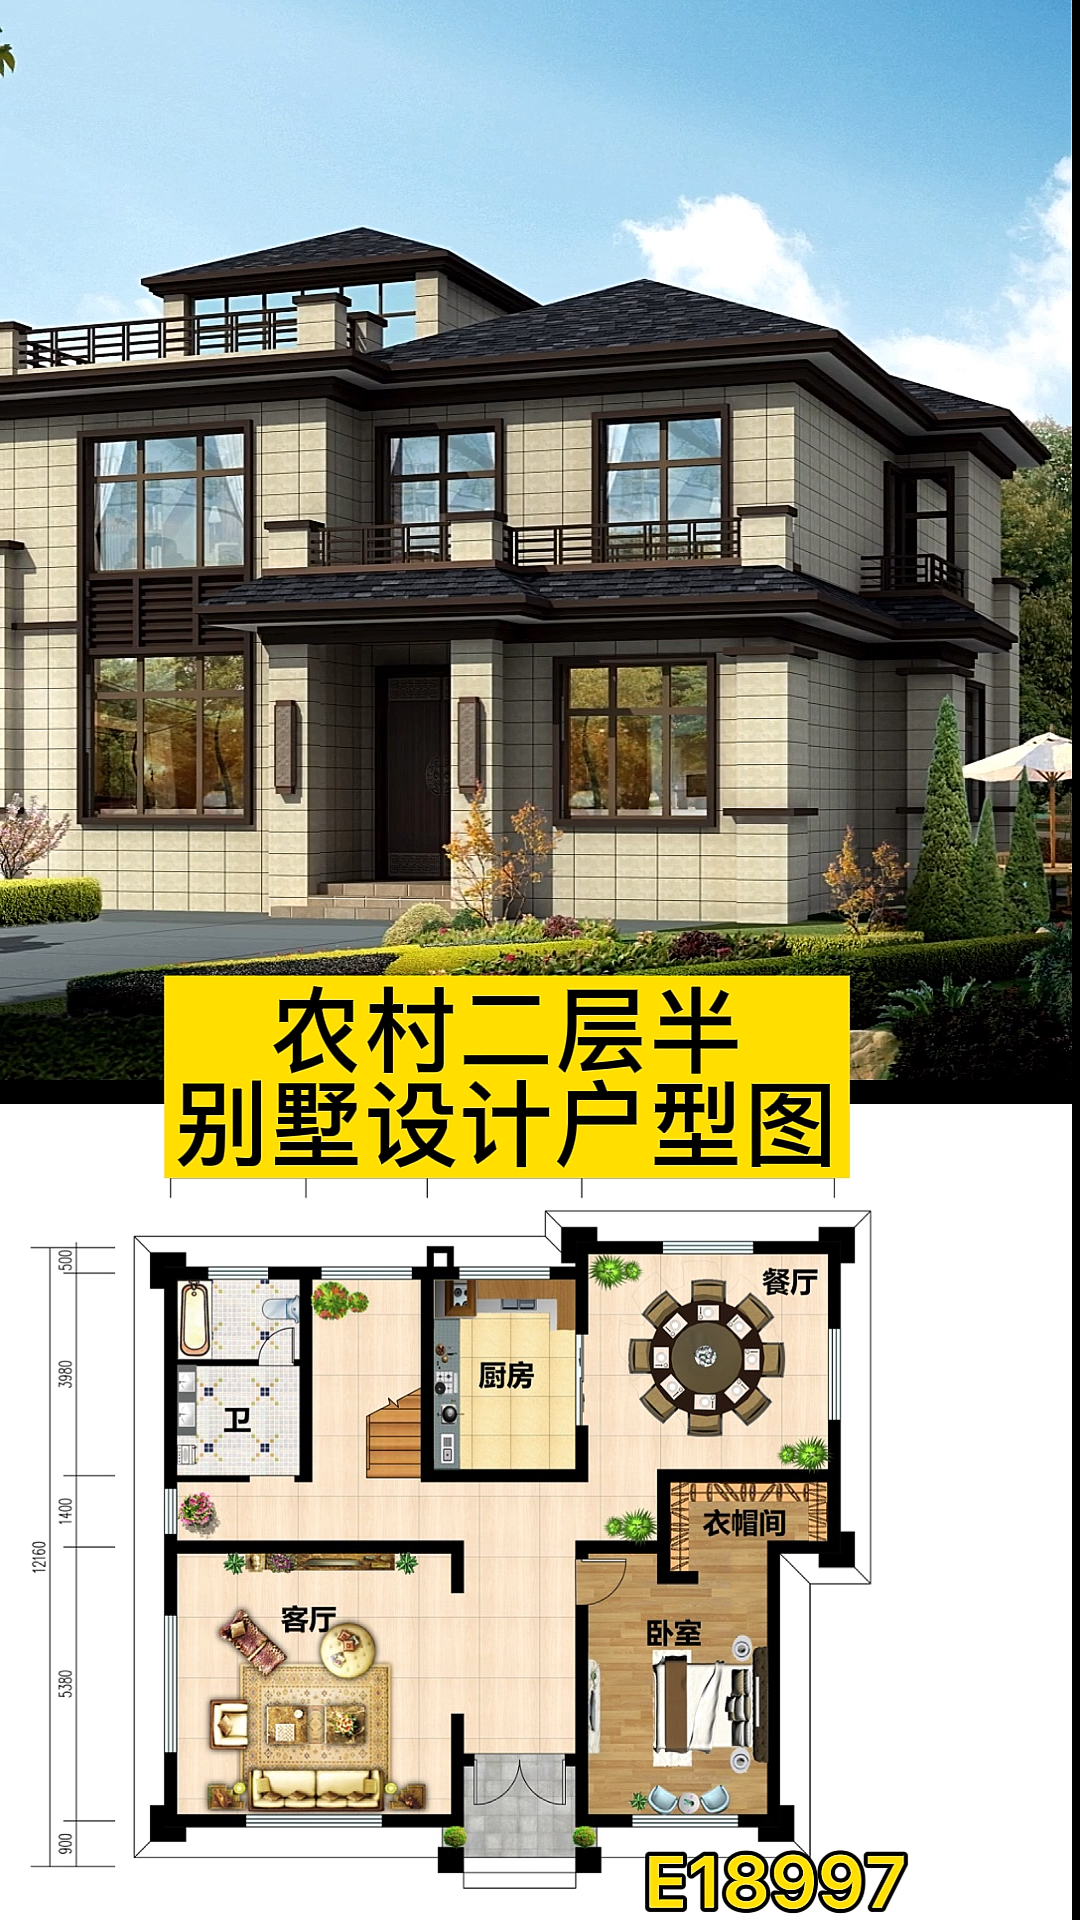 二层半别墅农村二层半别墅设计户型图图纸之家经典方案